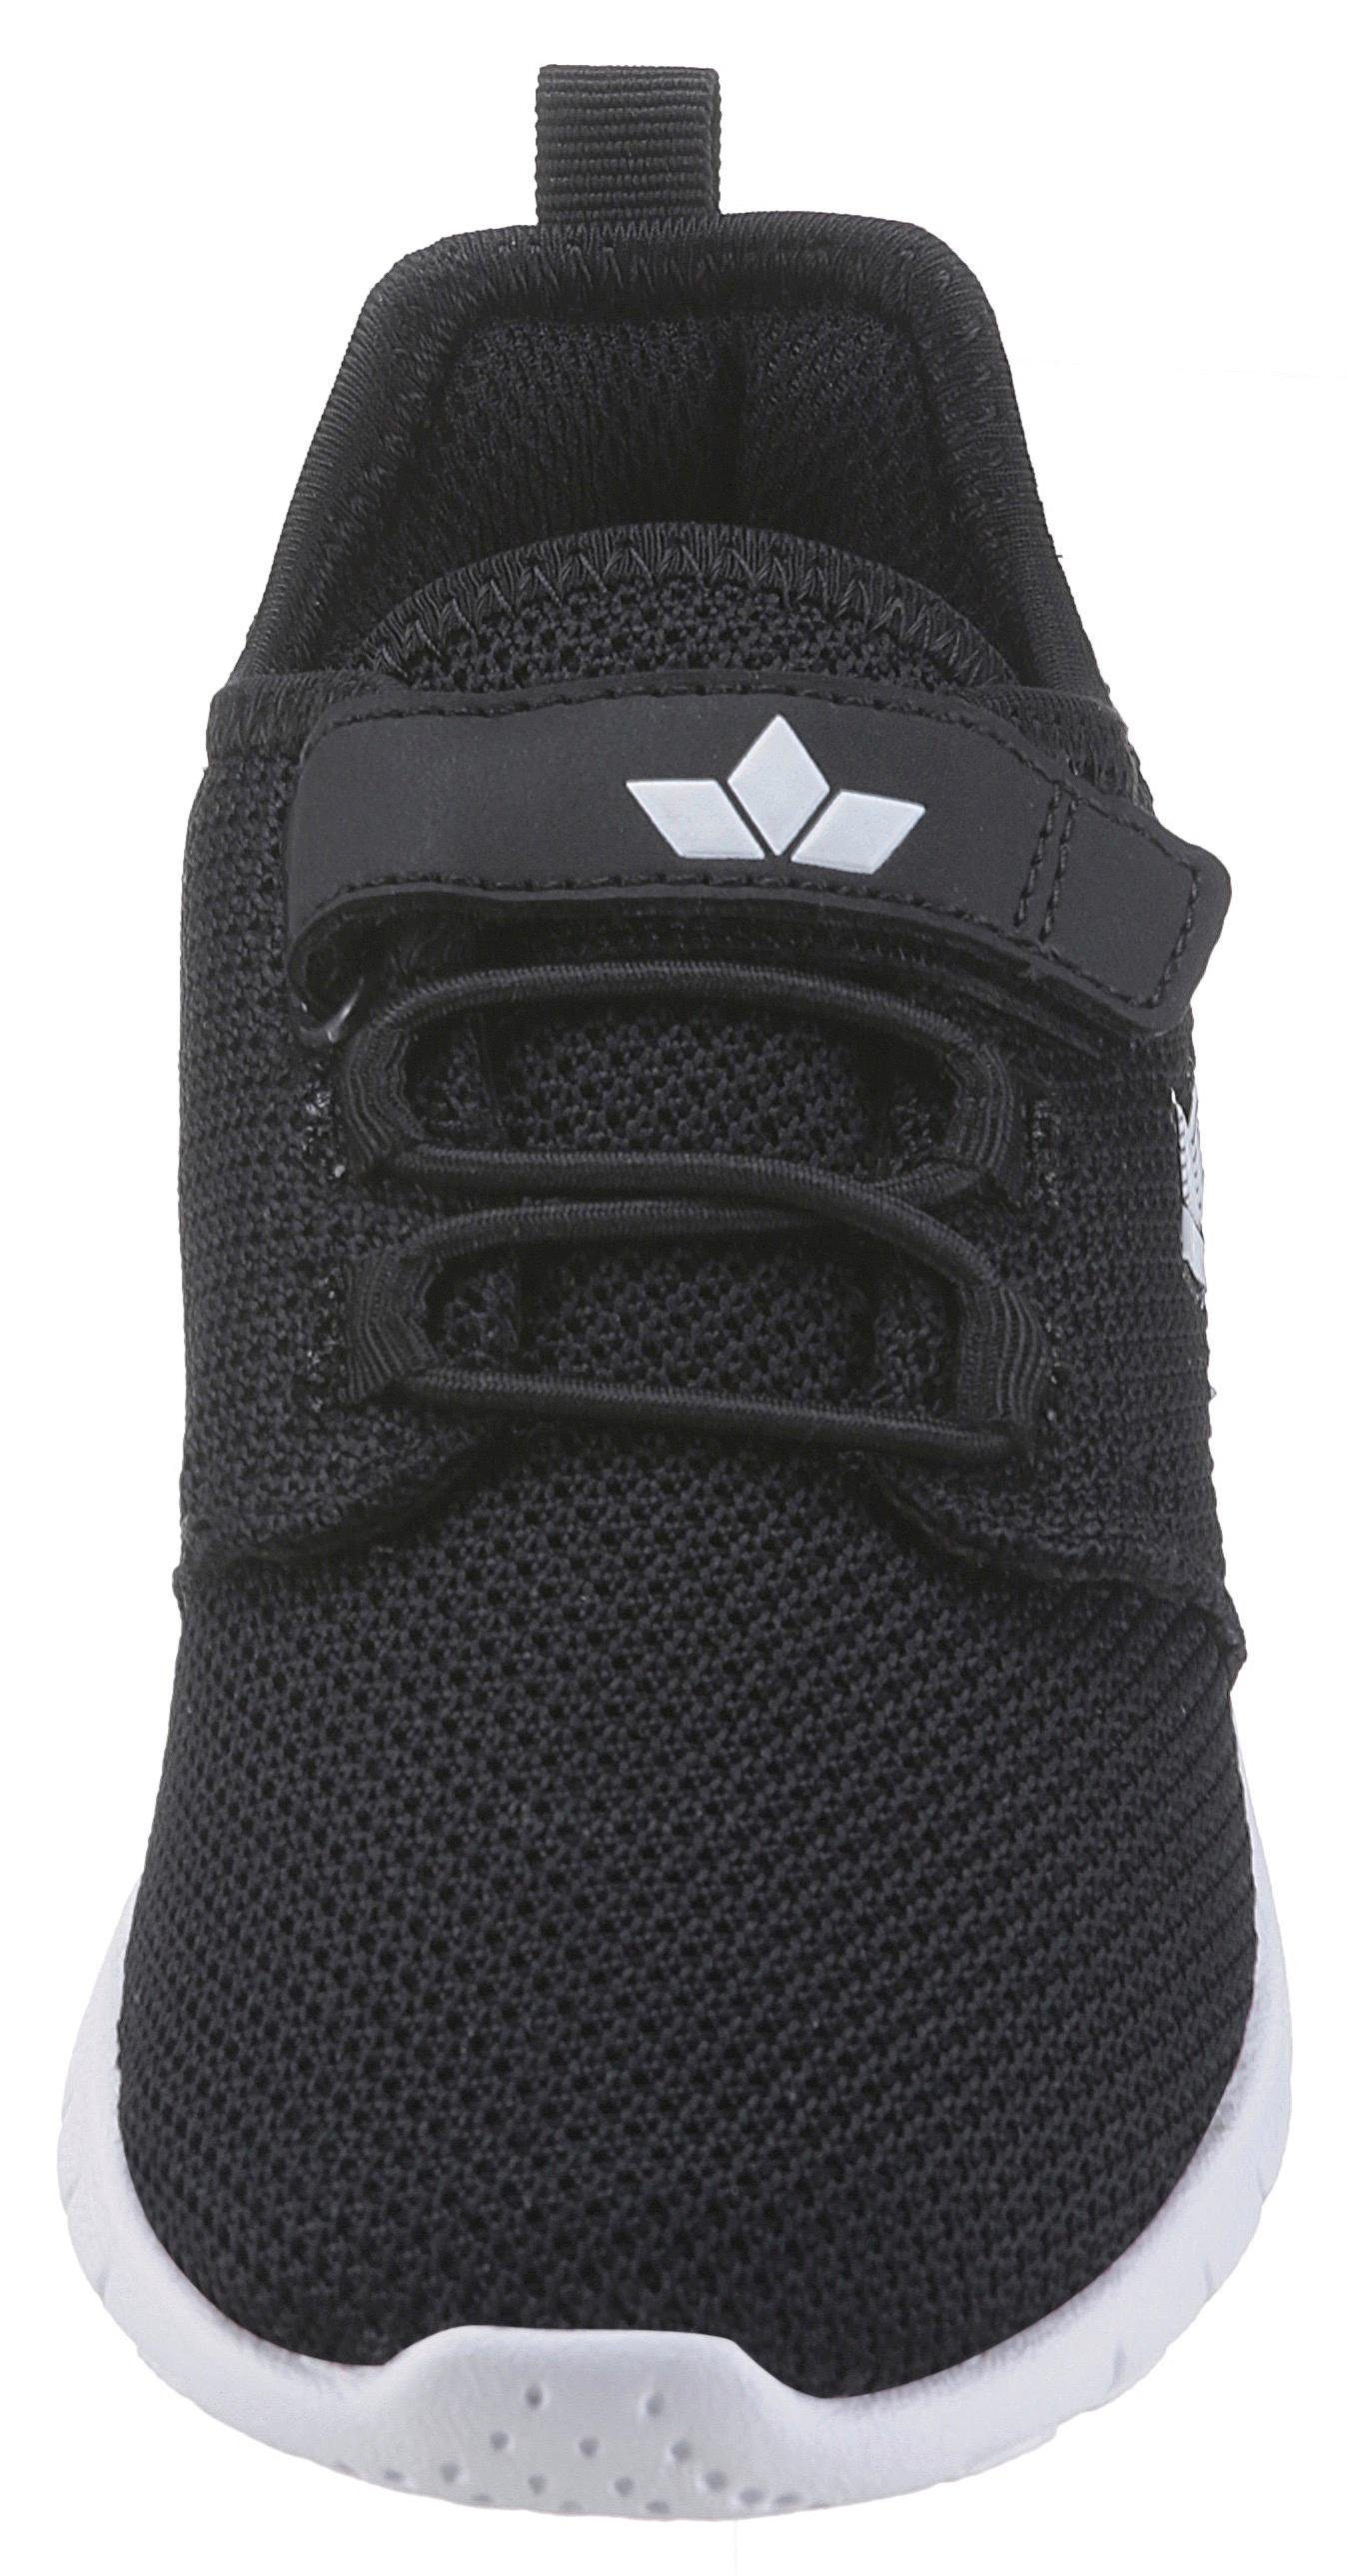 PANCHO Gummibändern und schwarz/weiss Lico Klettverschluss mit Sneaker